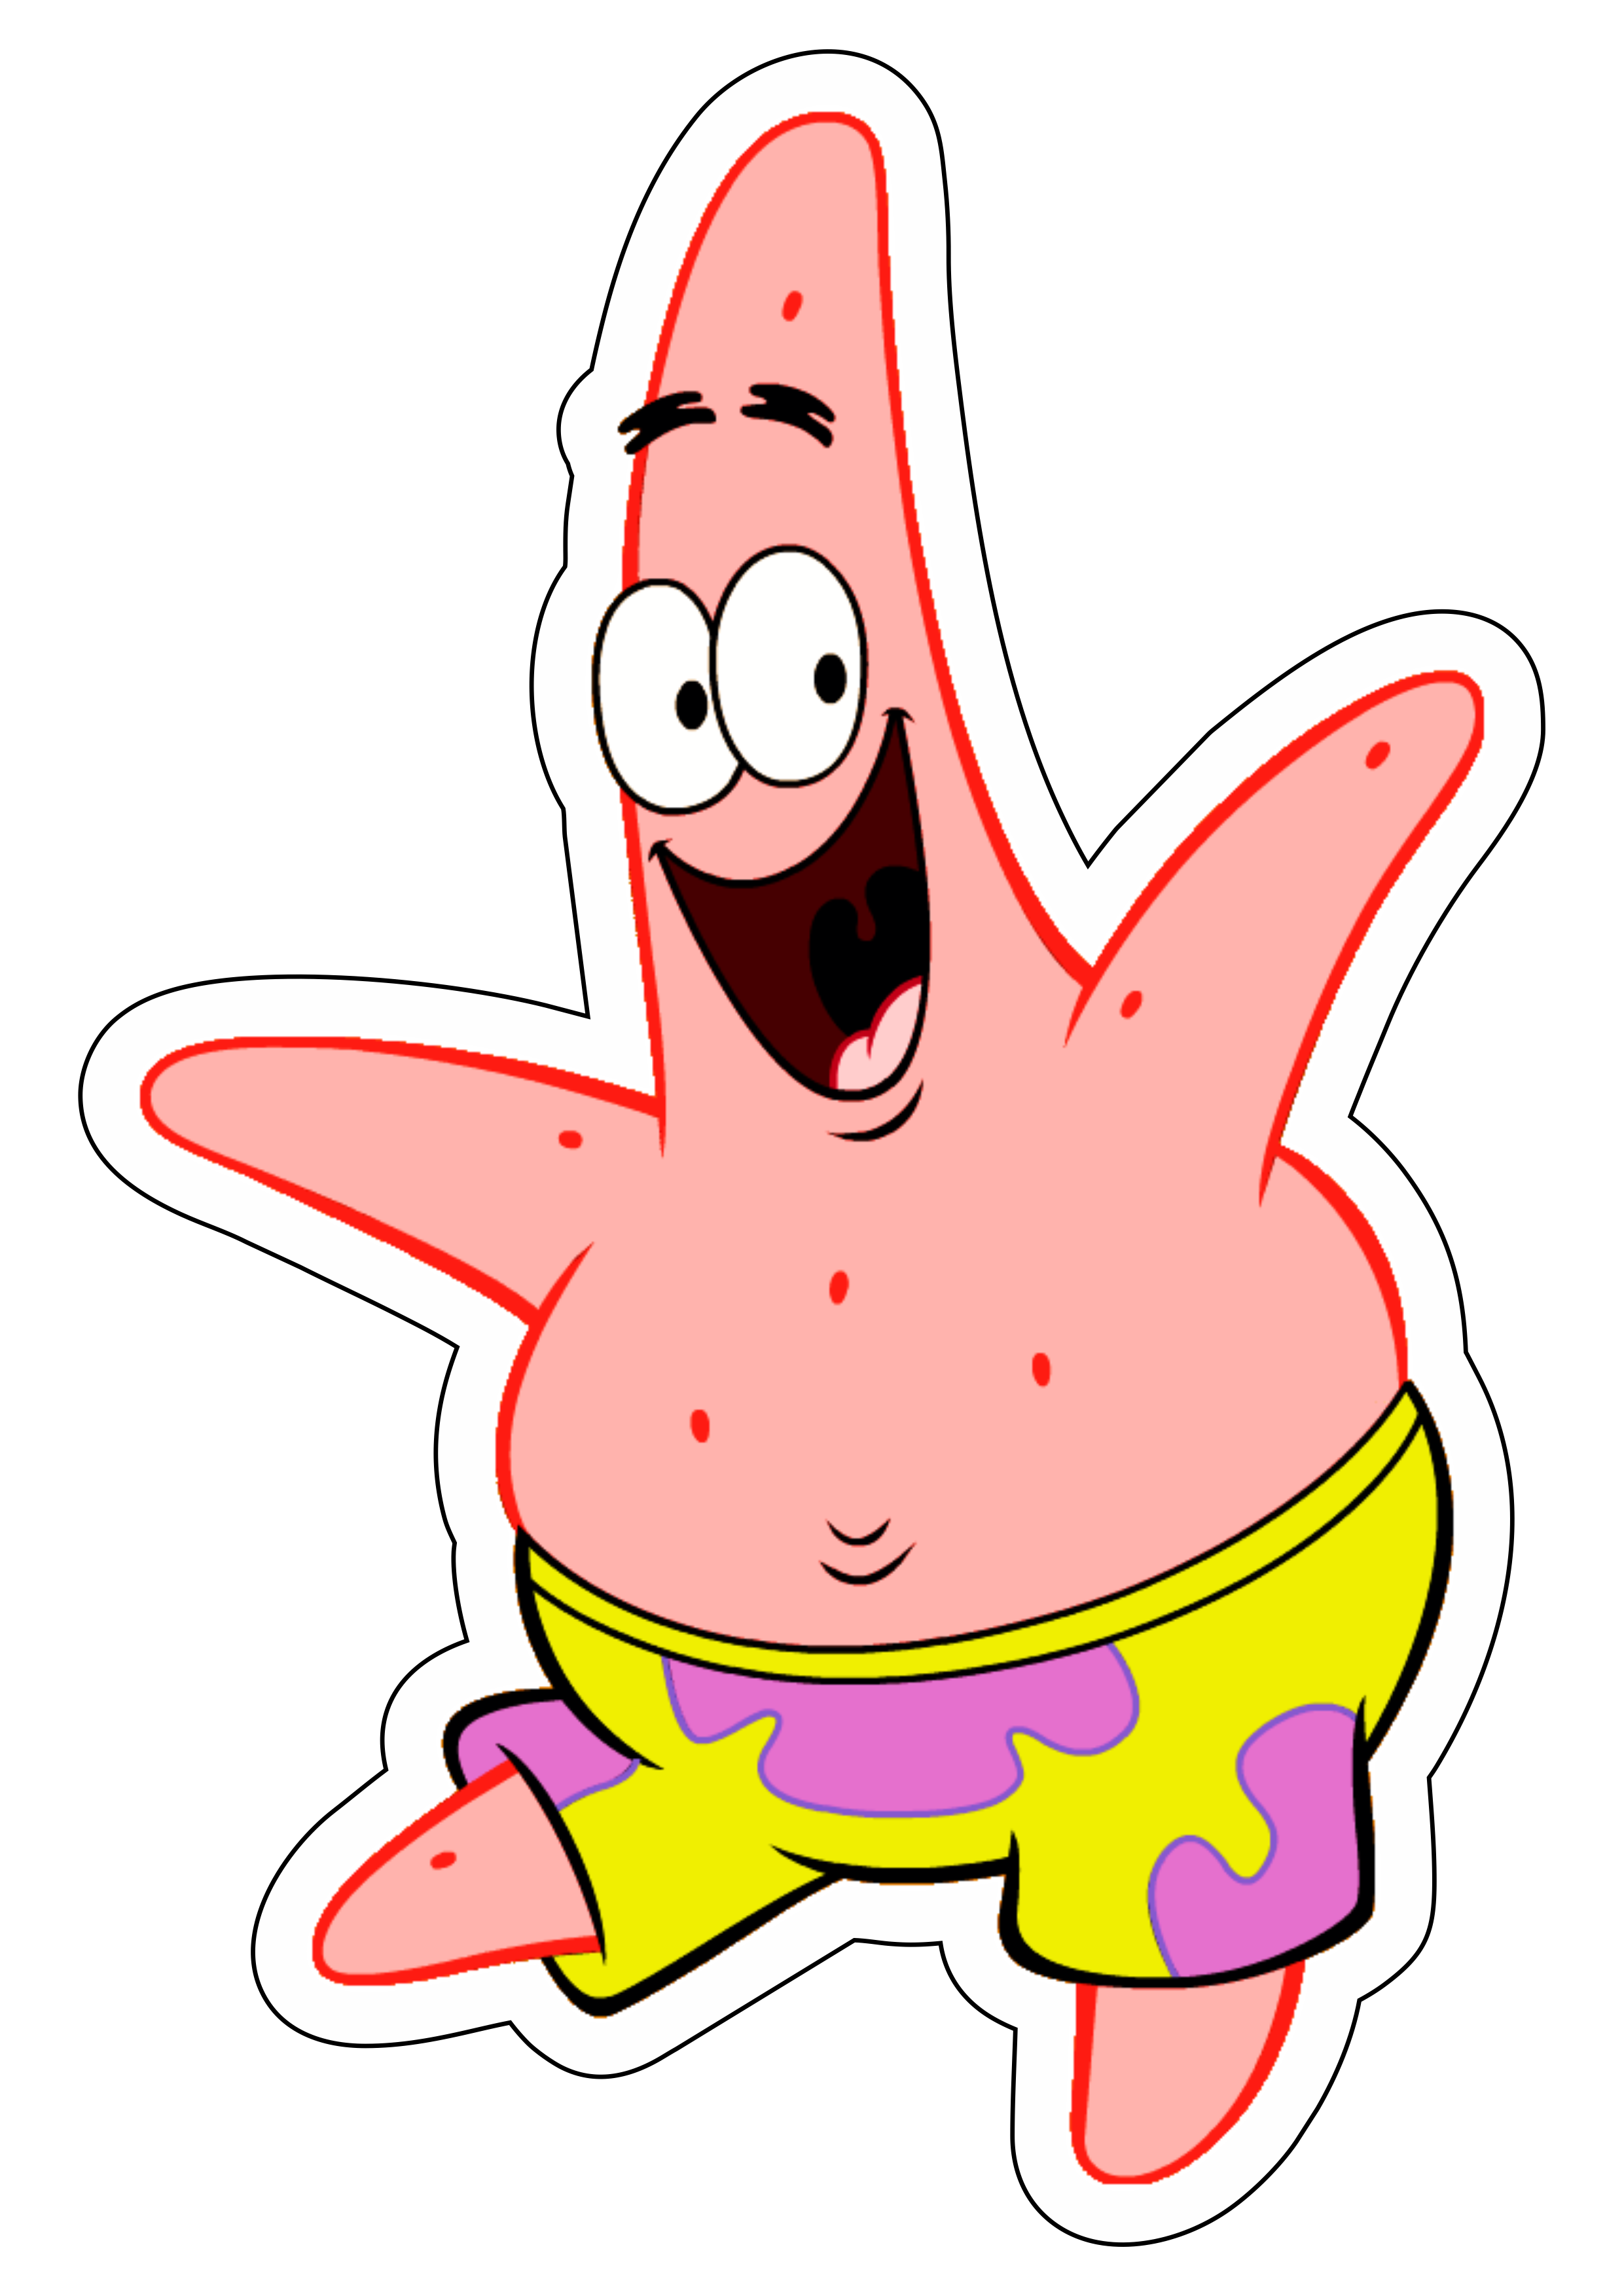 Bob esponja calça quadrada Spongebob Squarepants Patrick estrela desenho animado infantil Nickelodeon feliz engraçado png